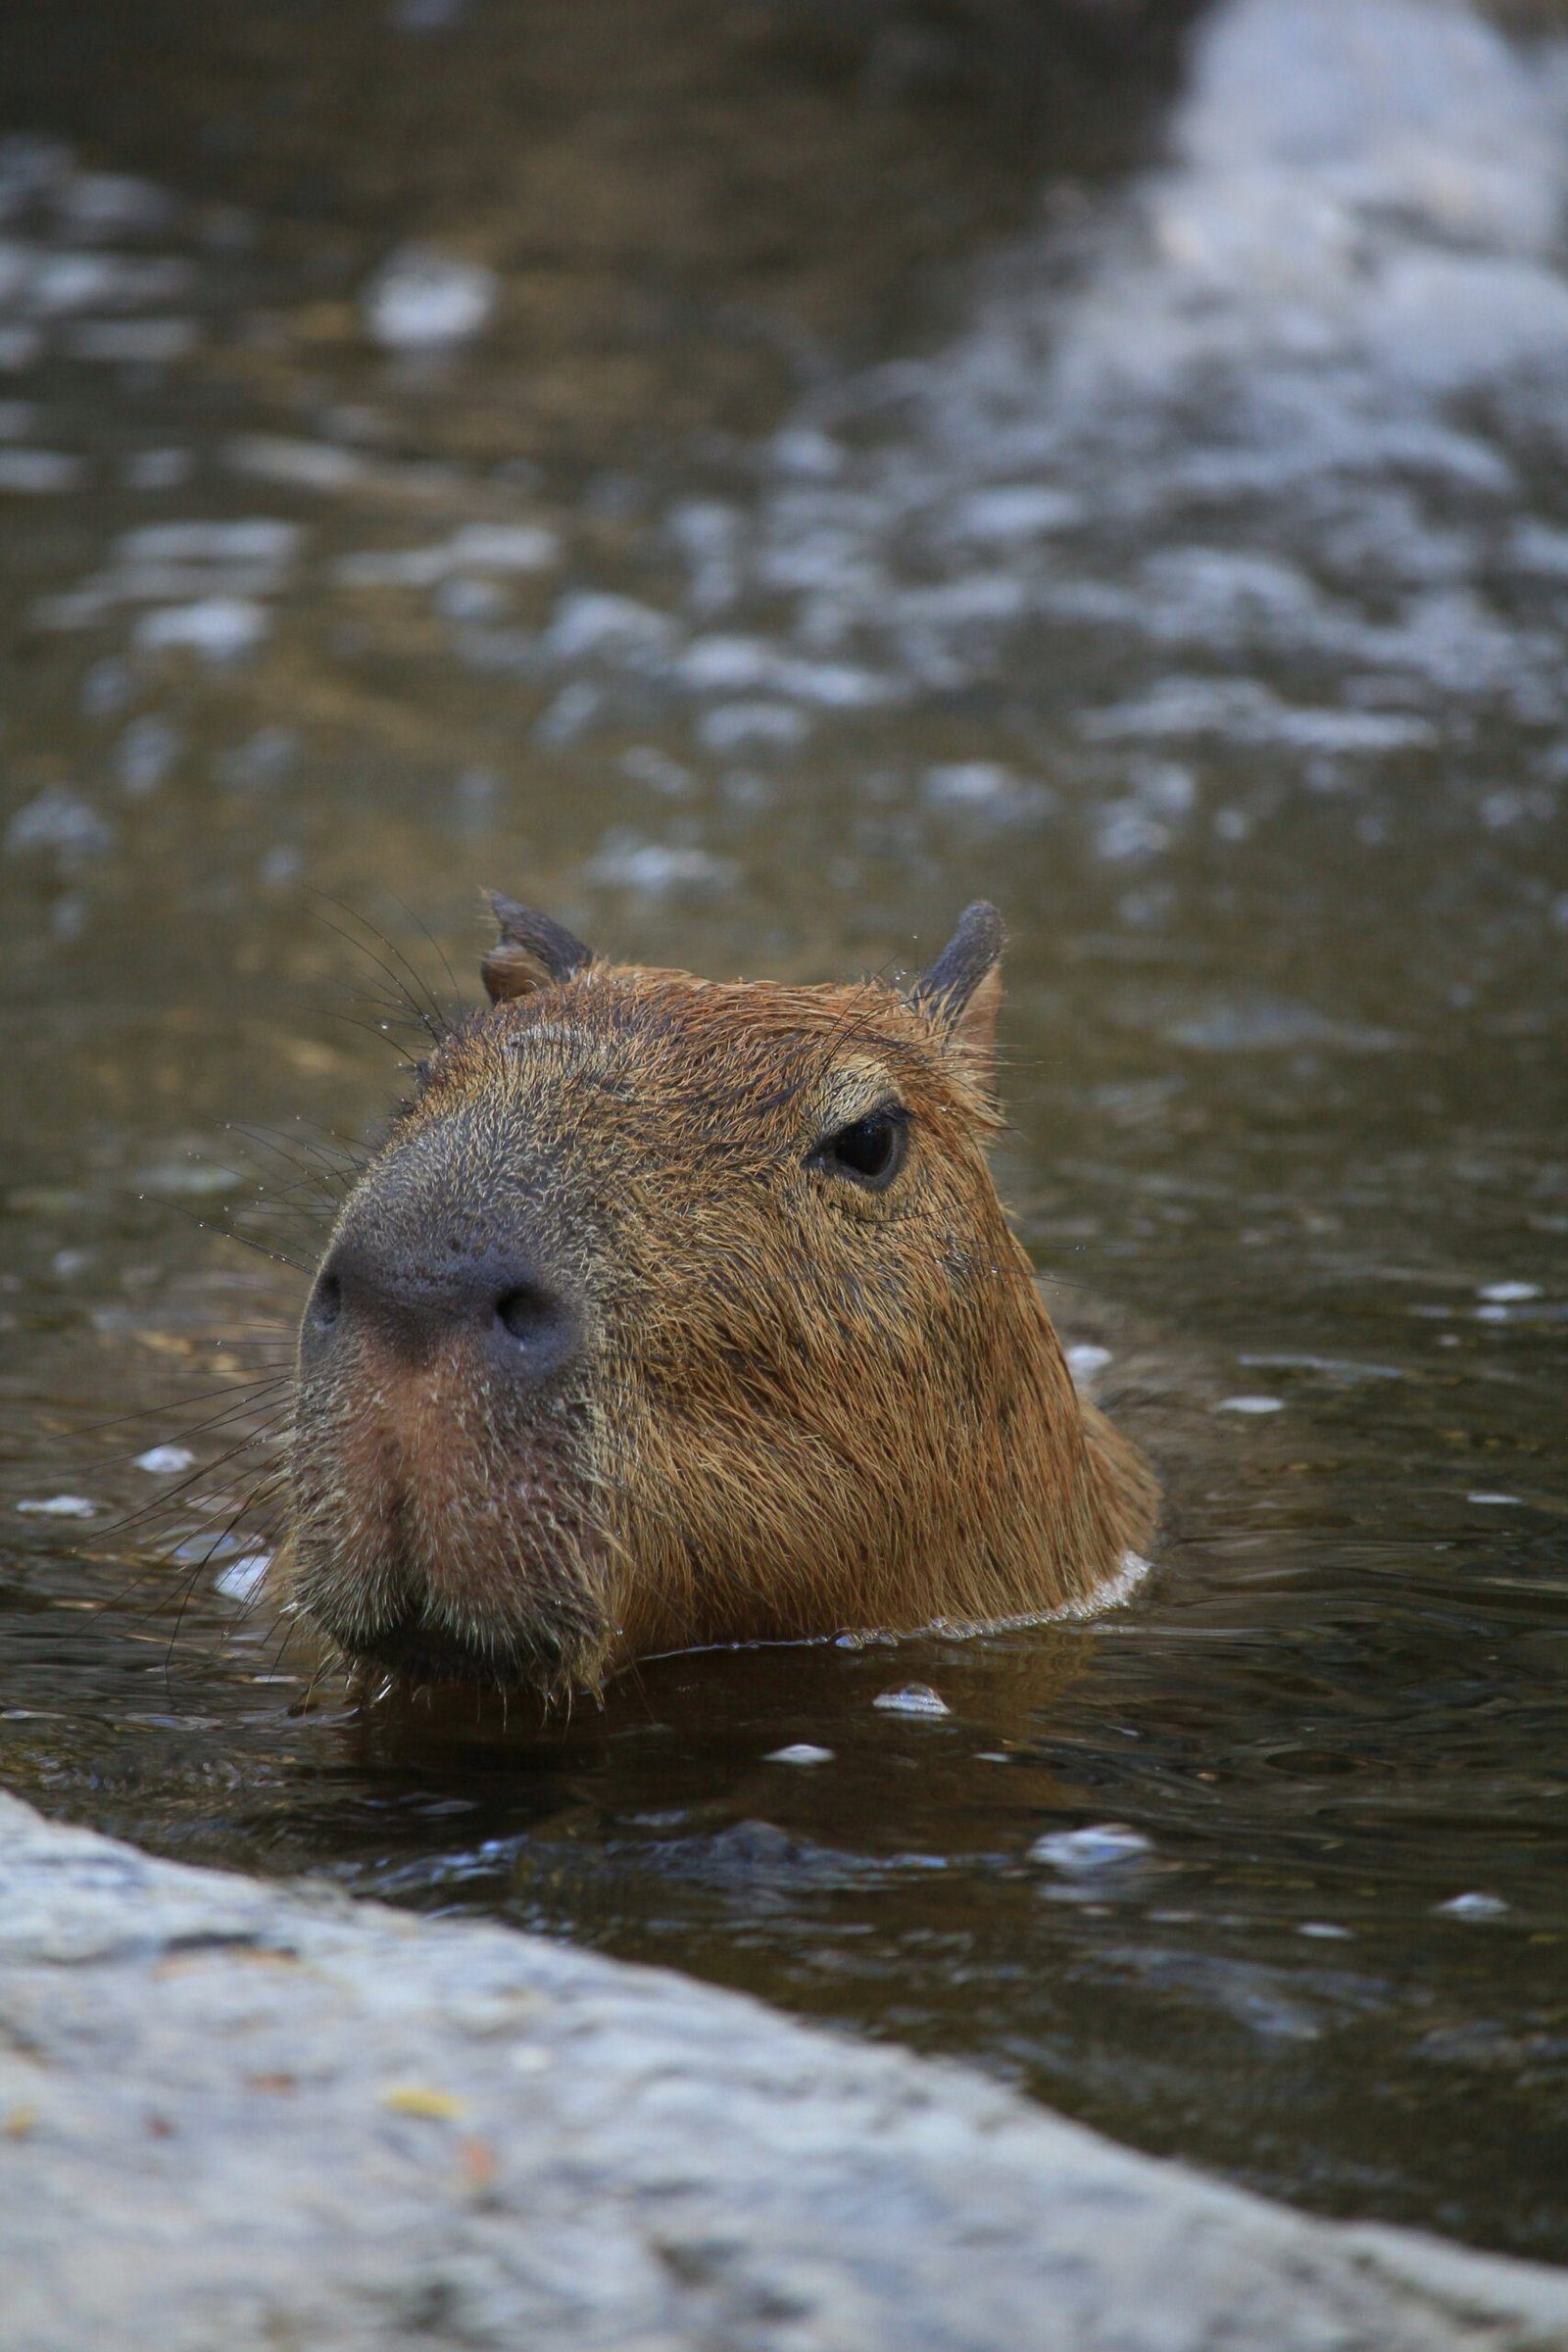 What is a Capybara?